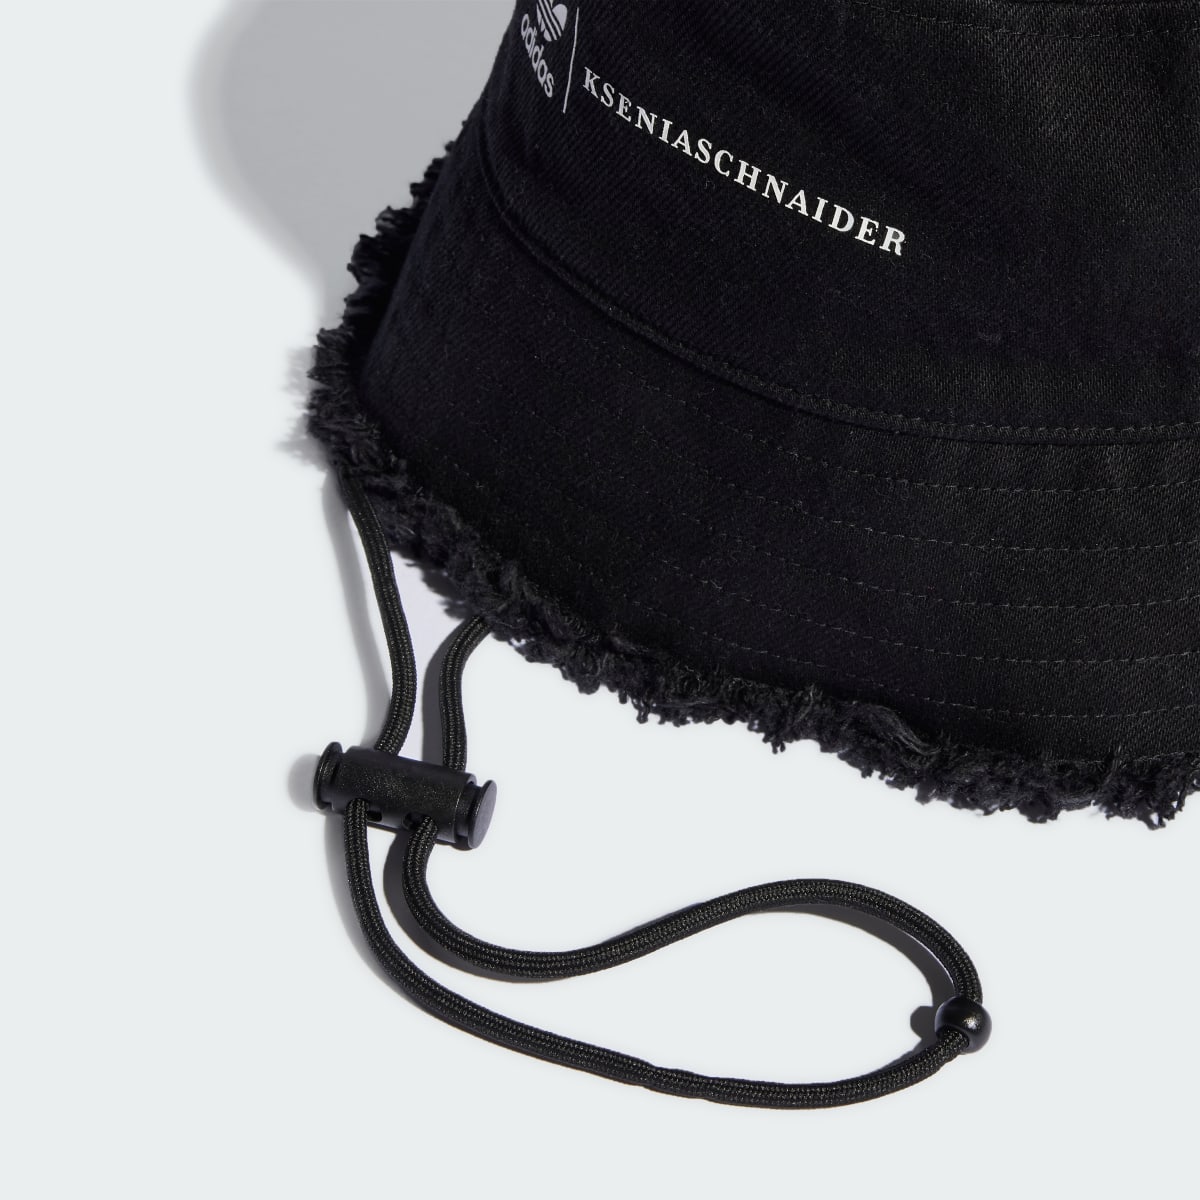 Adidas Originals x KSENIASCHNAIDER Bucket Hat. 5